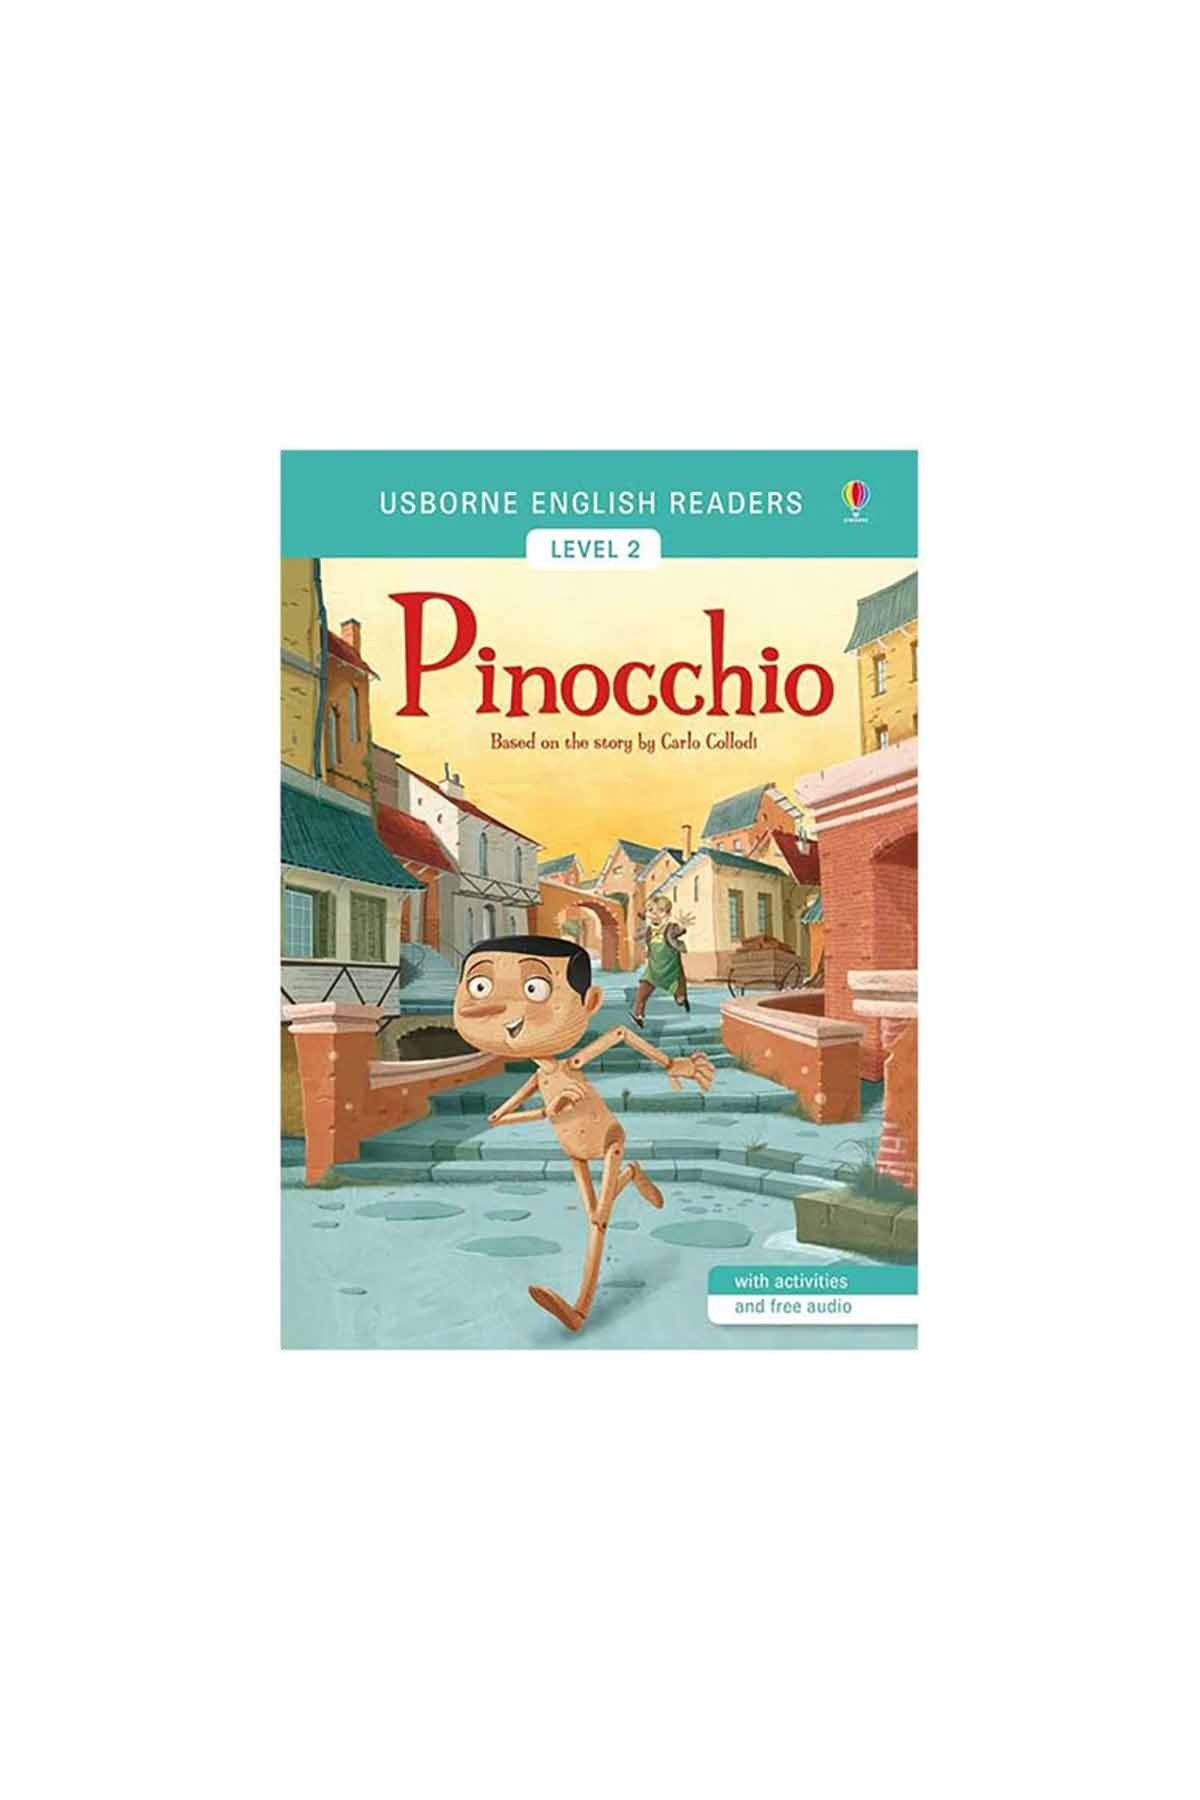 The Usborne Pinocchio